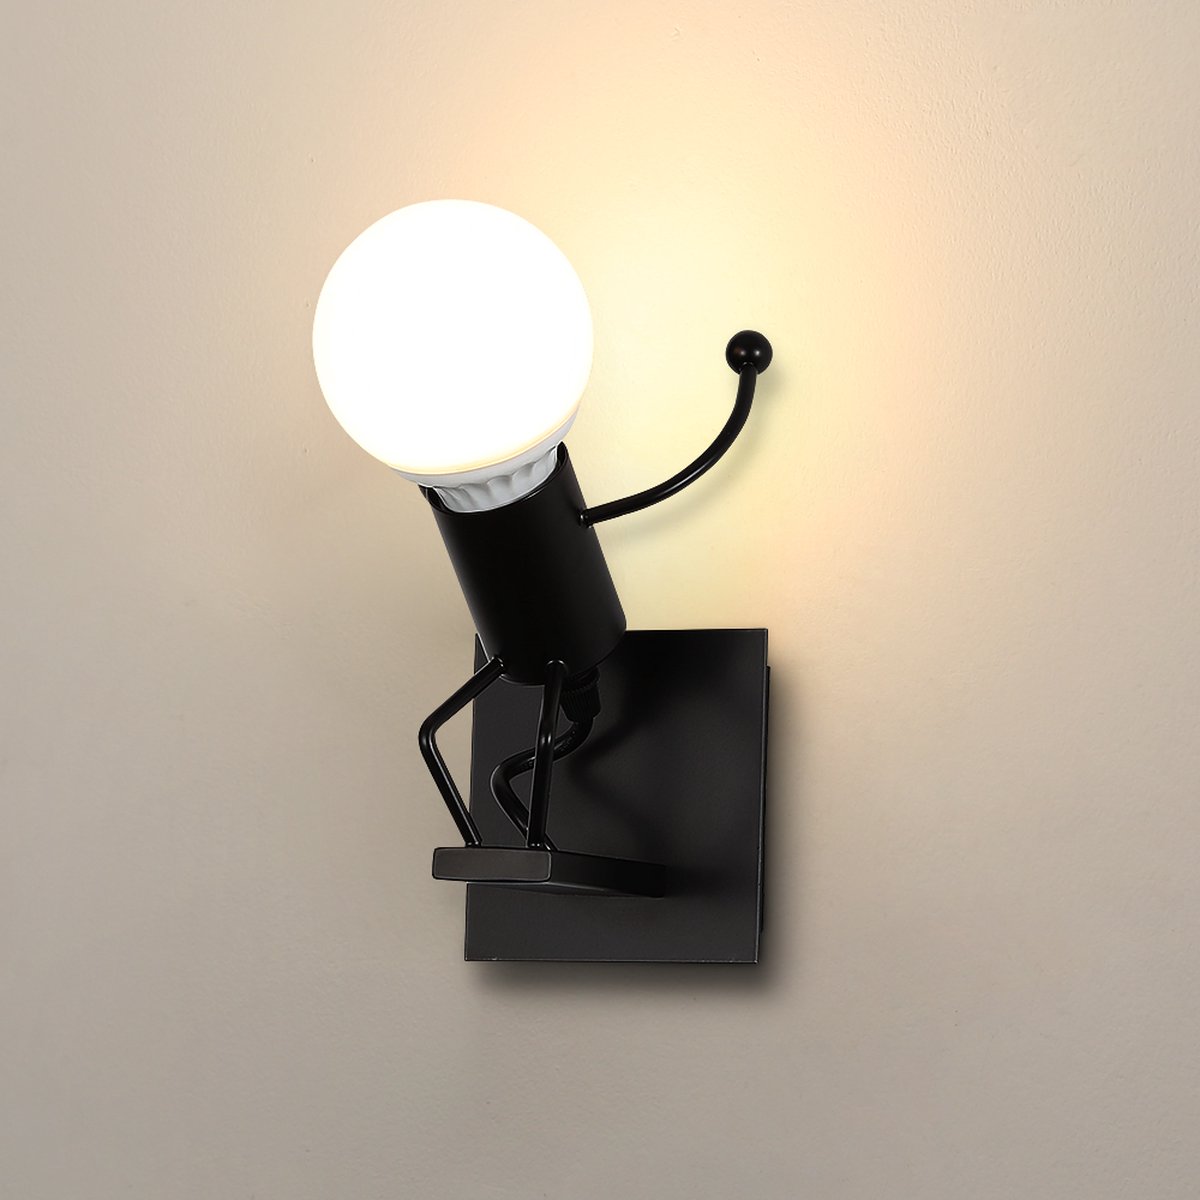 Delaveek-Creatieve Industriële Binnen Wandlampen - Zwart - E27 (lamp niet inbegrepen)